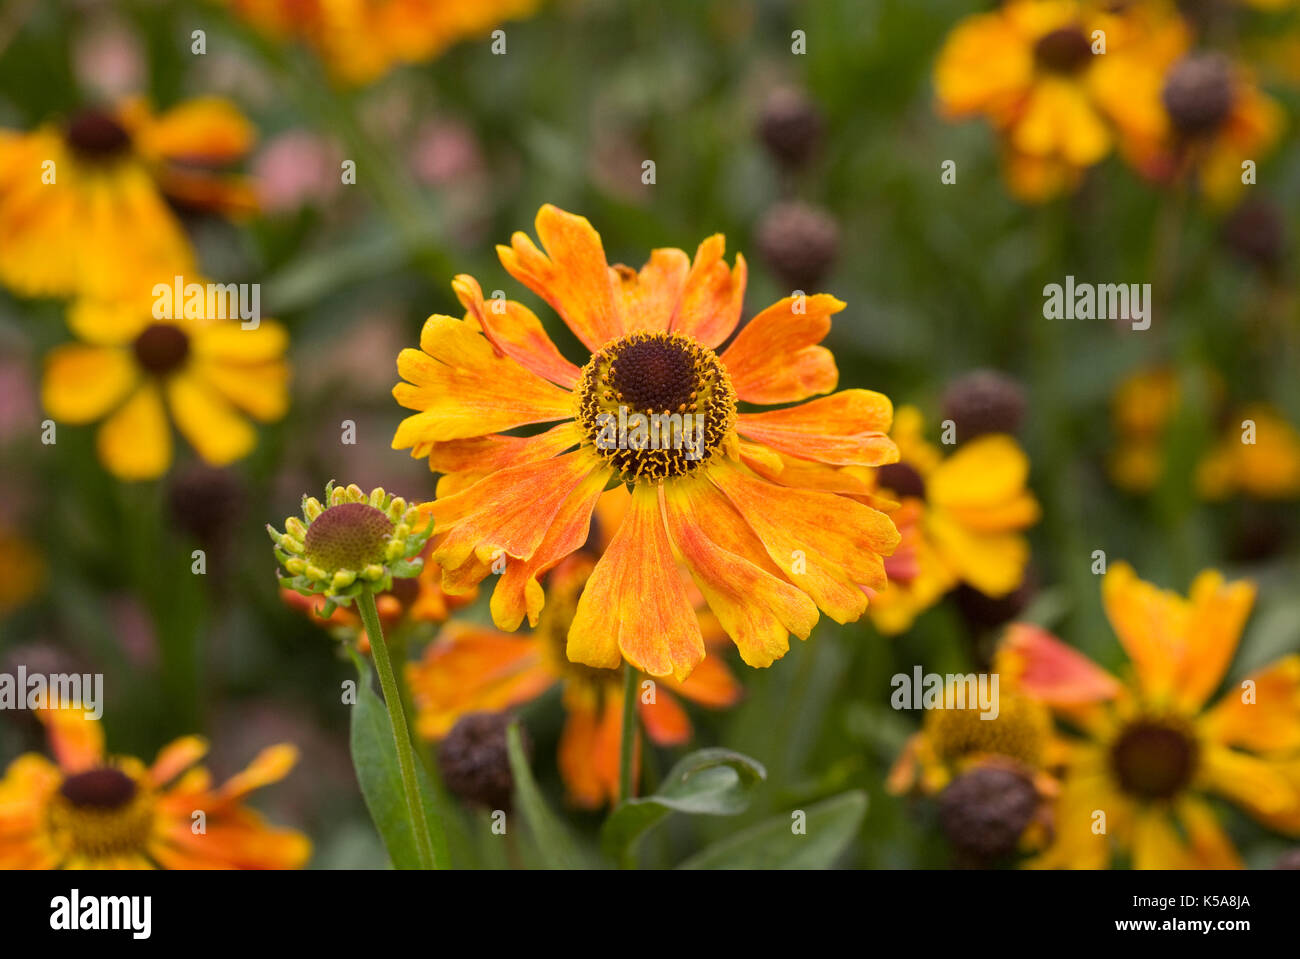 Helenium 'Waltraut' flowers. Stock Photo